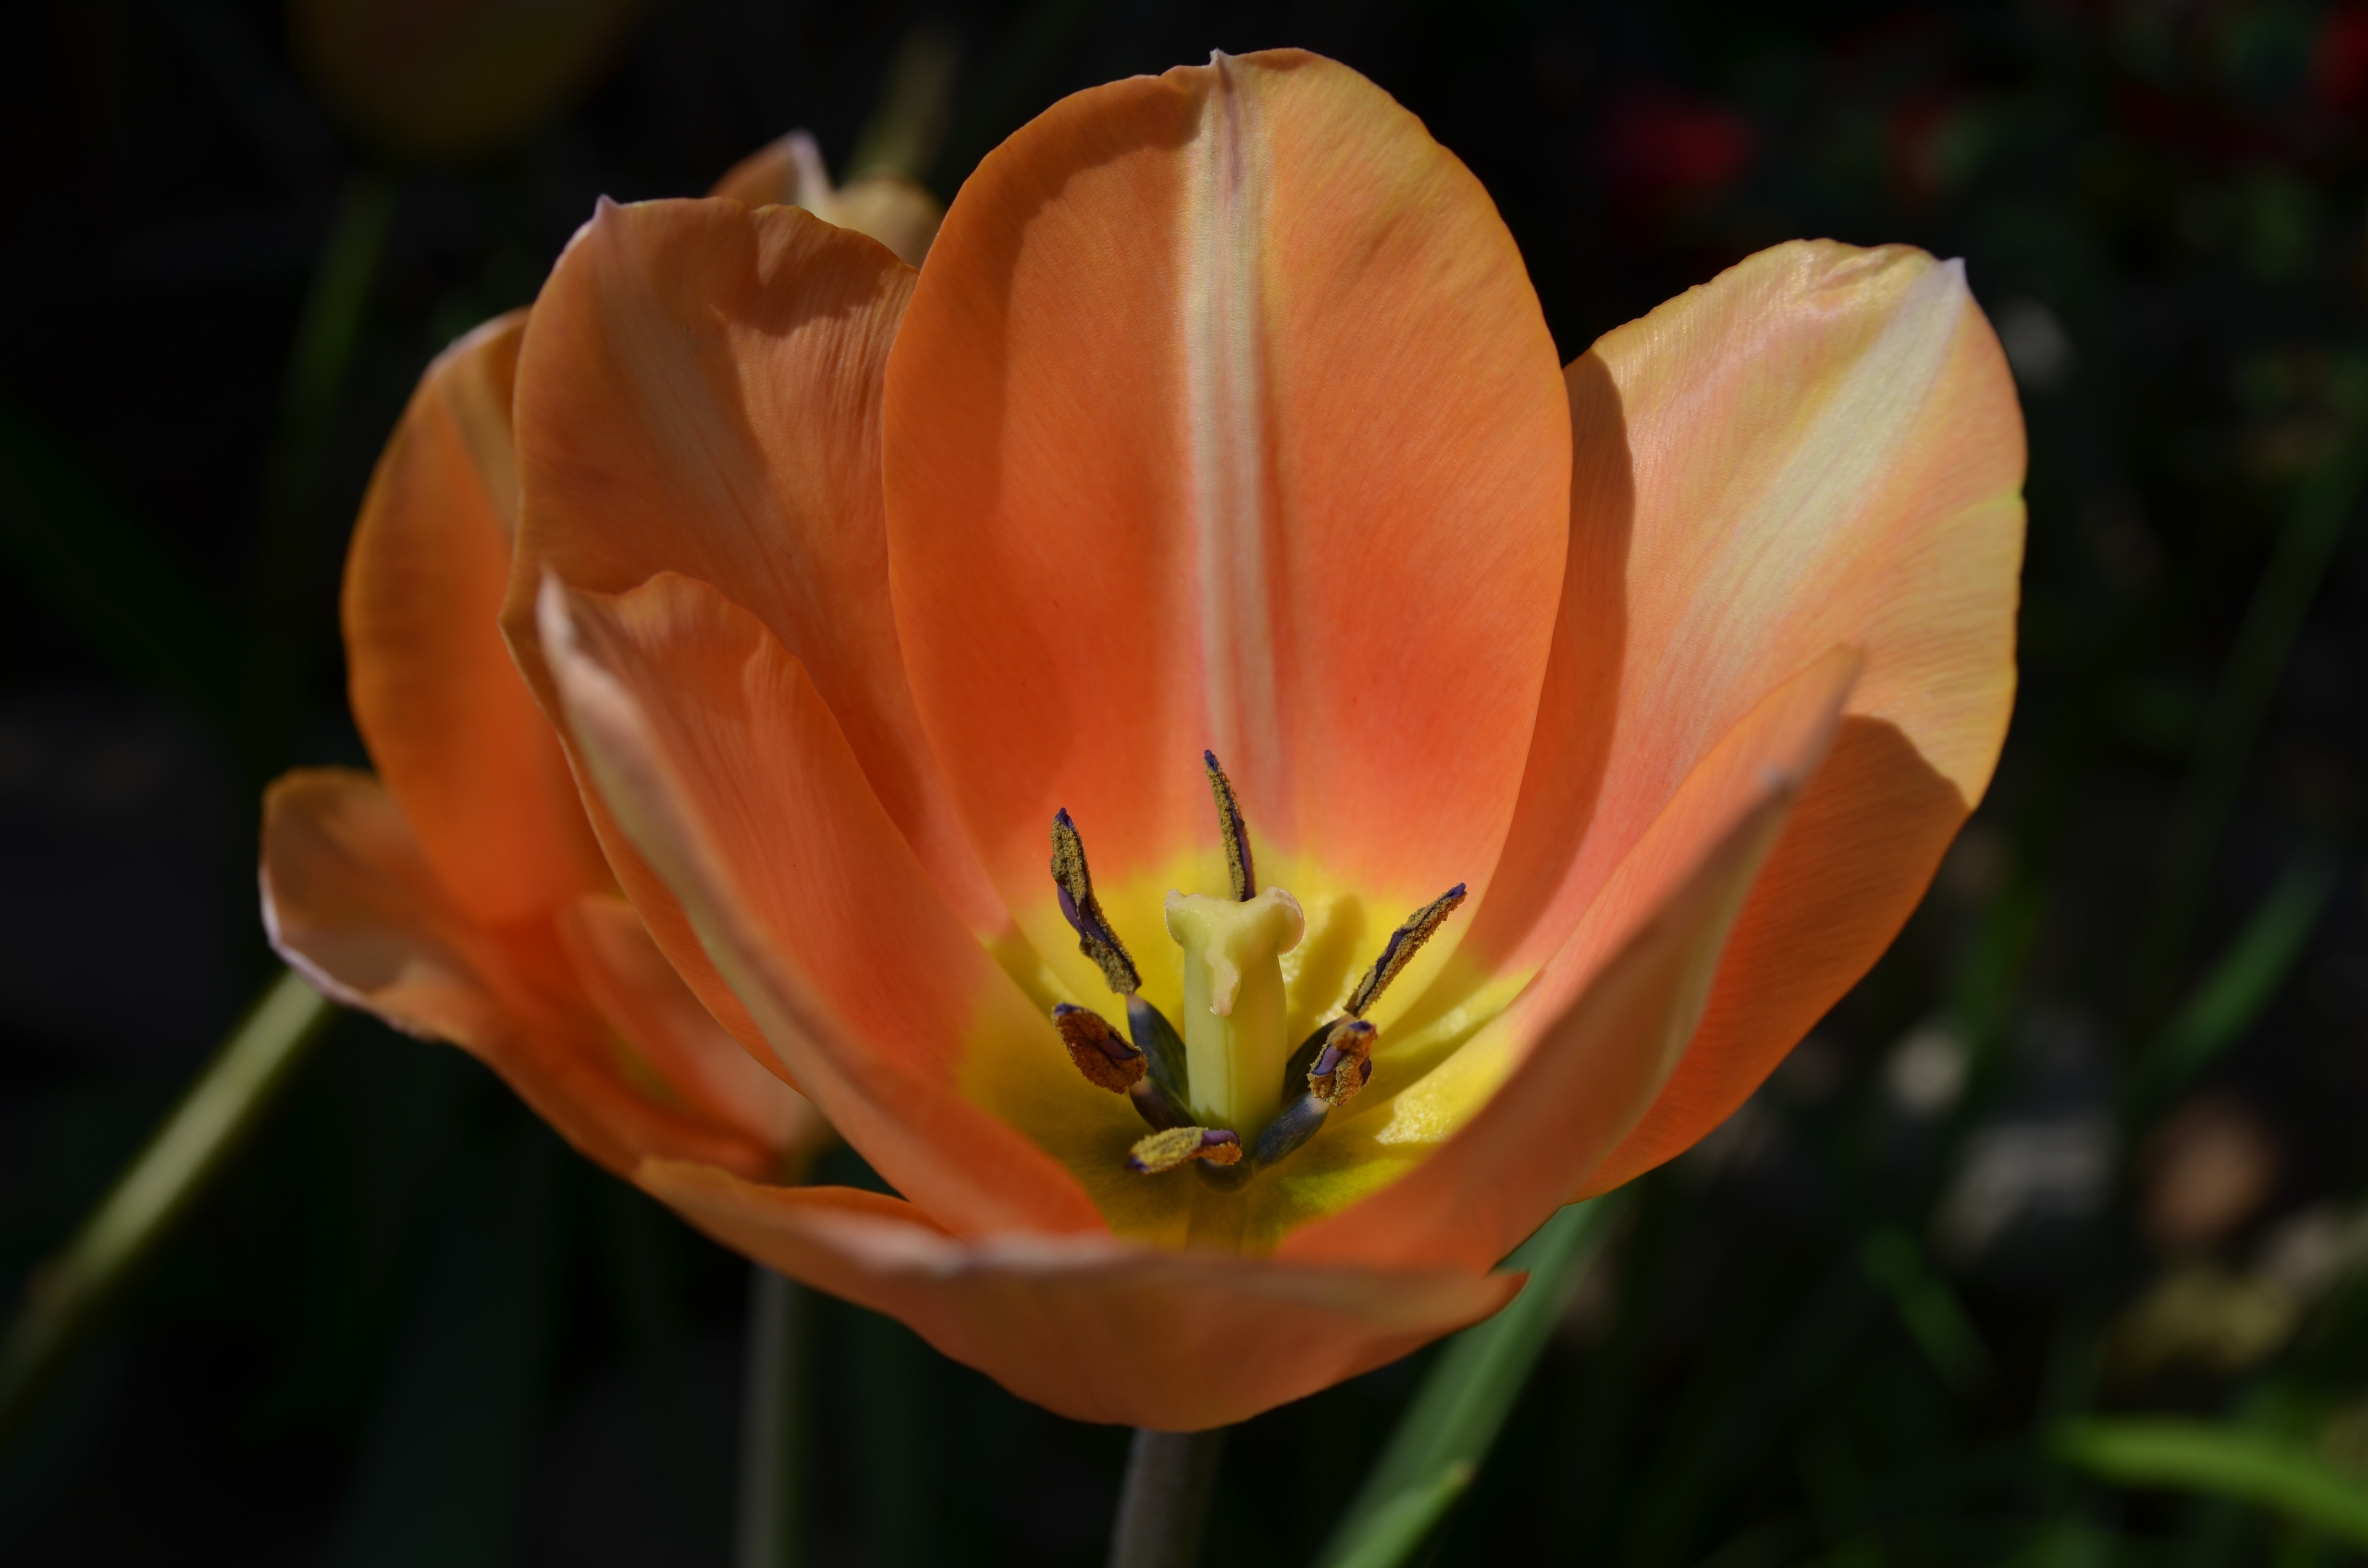 peach tulip flower